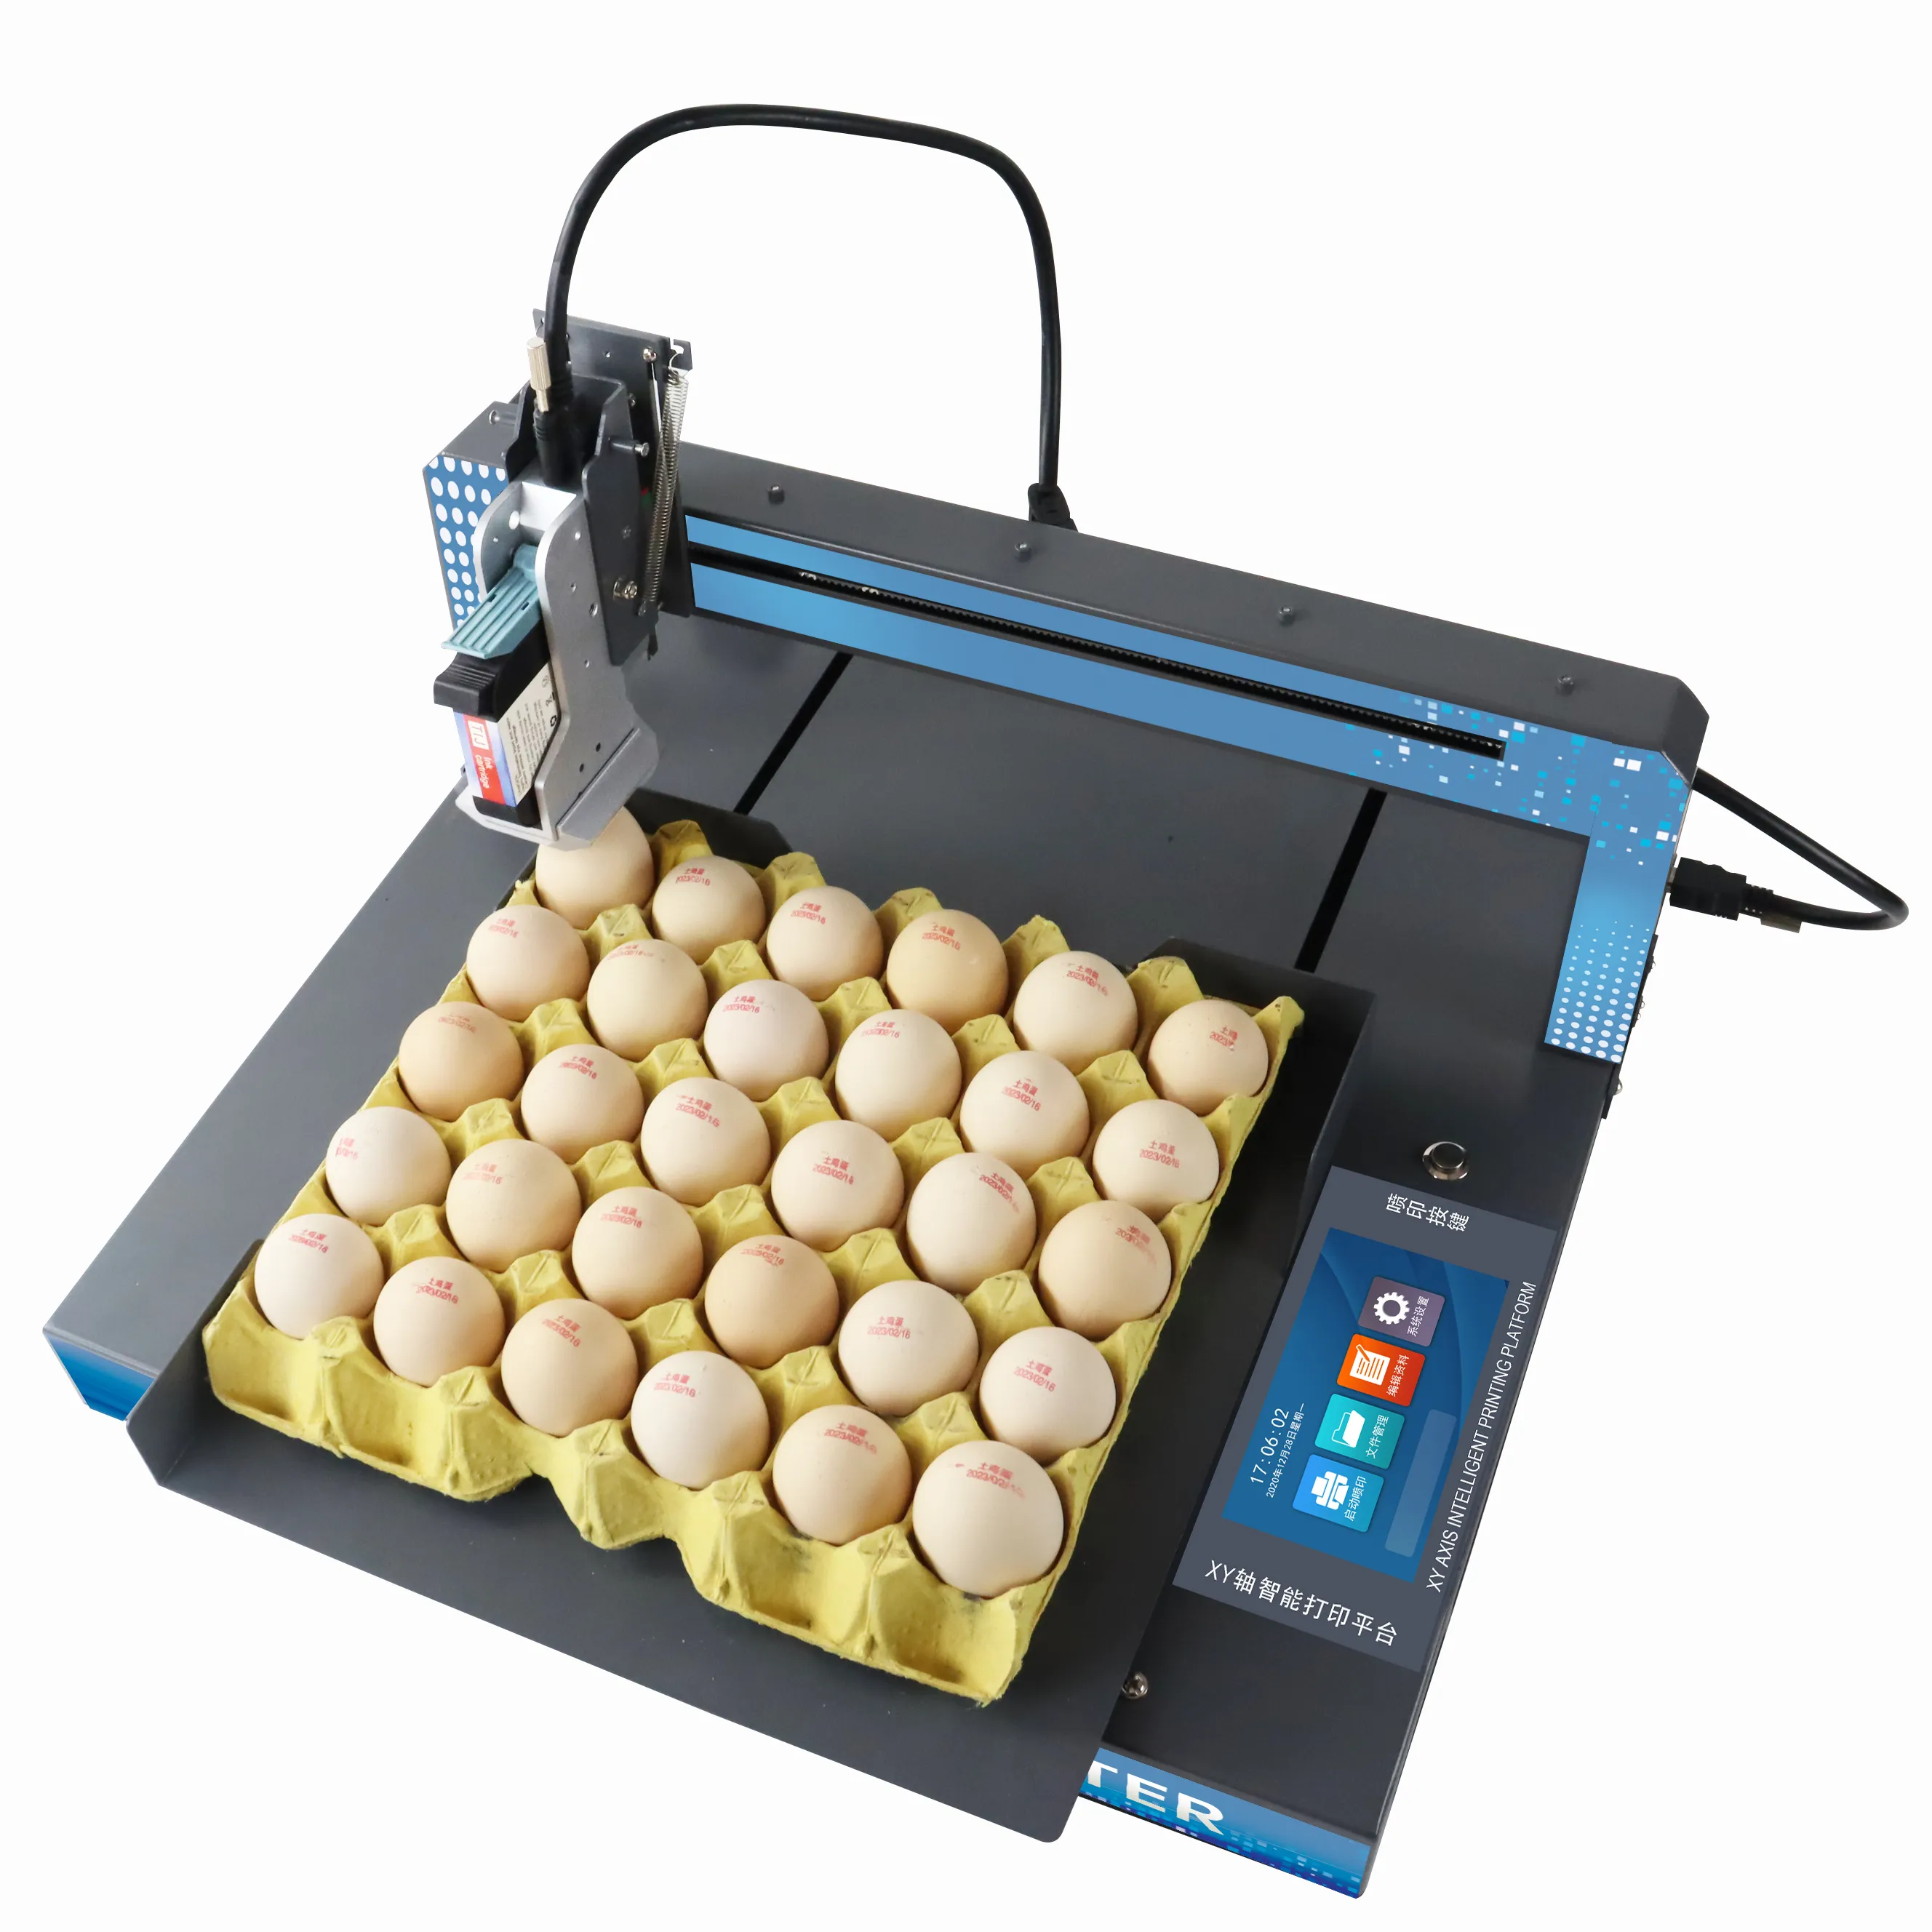 XY110 otomatik yumurta kodlama makinesi tüm plaka baskı üretim tarihi seri numarası TIJ yumurta yazıcı mürekkebi